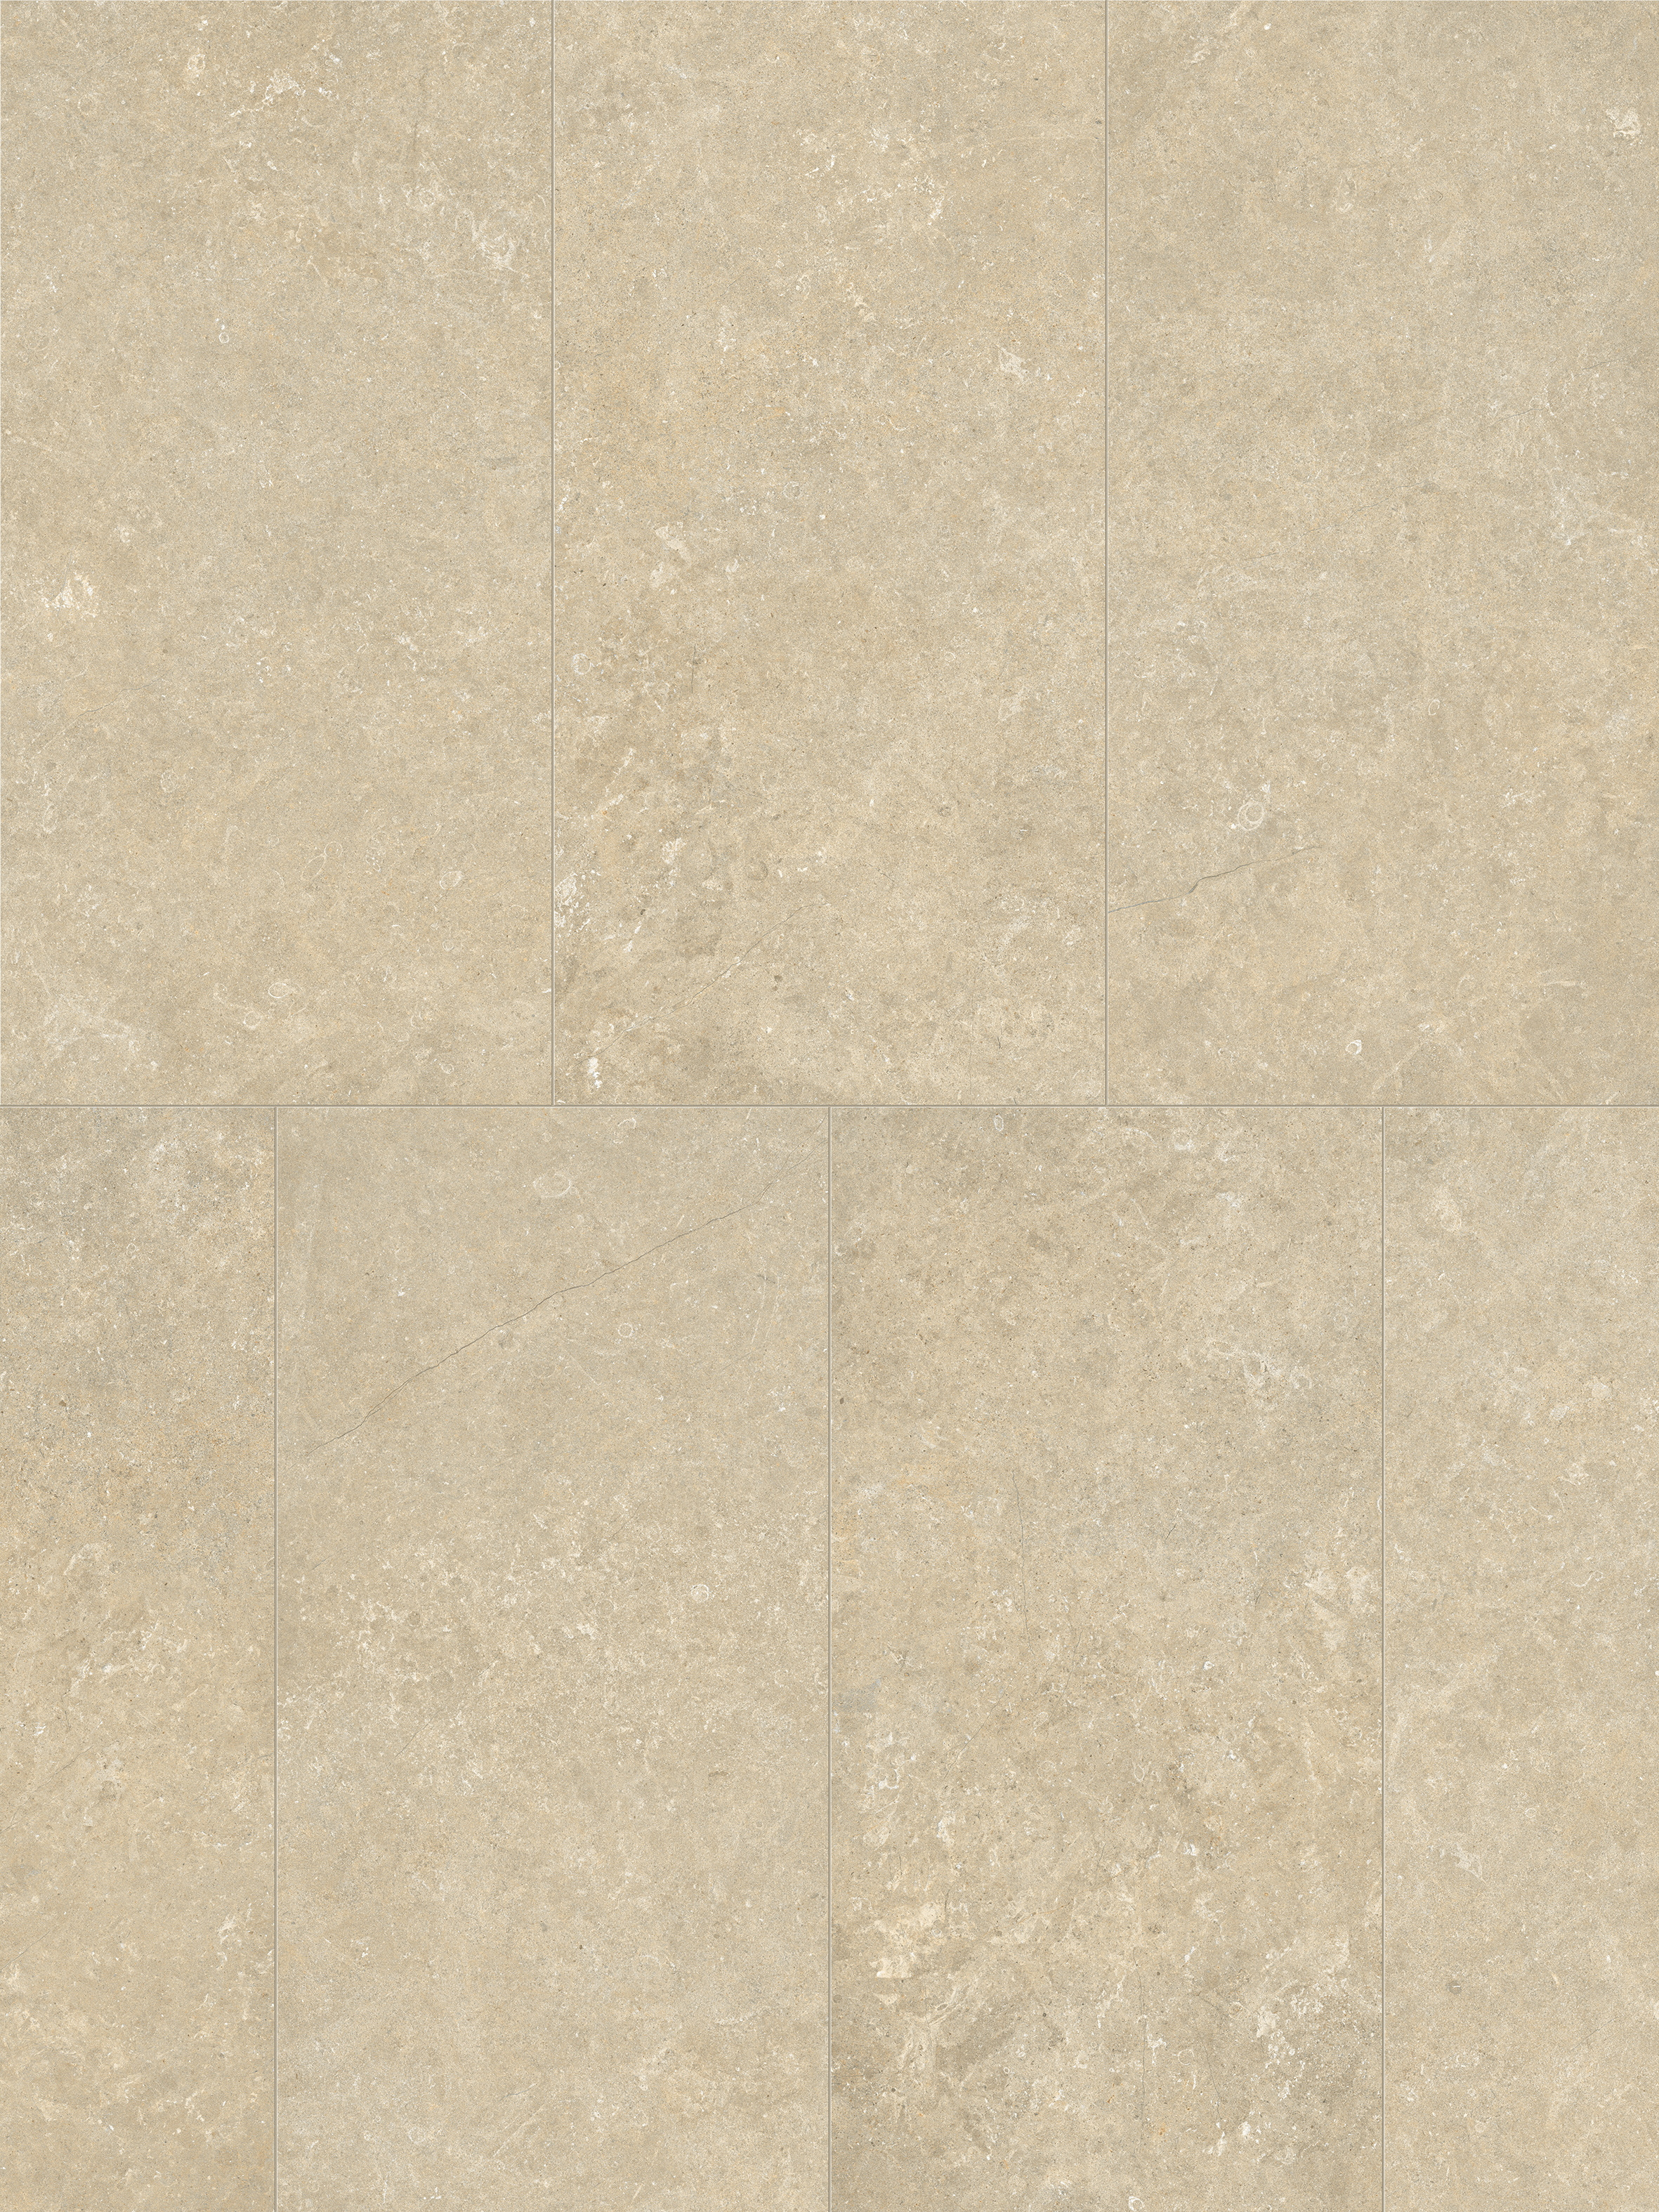 Marca Corona Arkistyle Sand Naturale – Matt Sand J212 natur matt 60x120cm rektifiziert 9mm